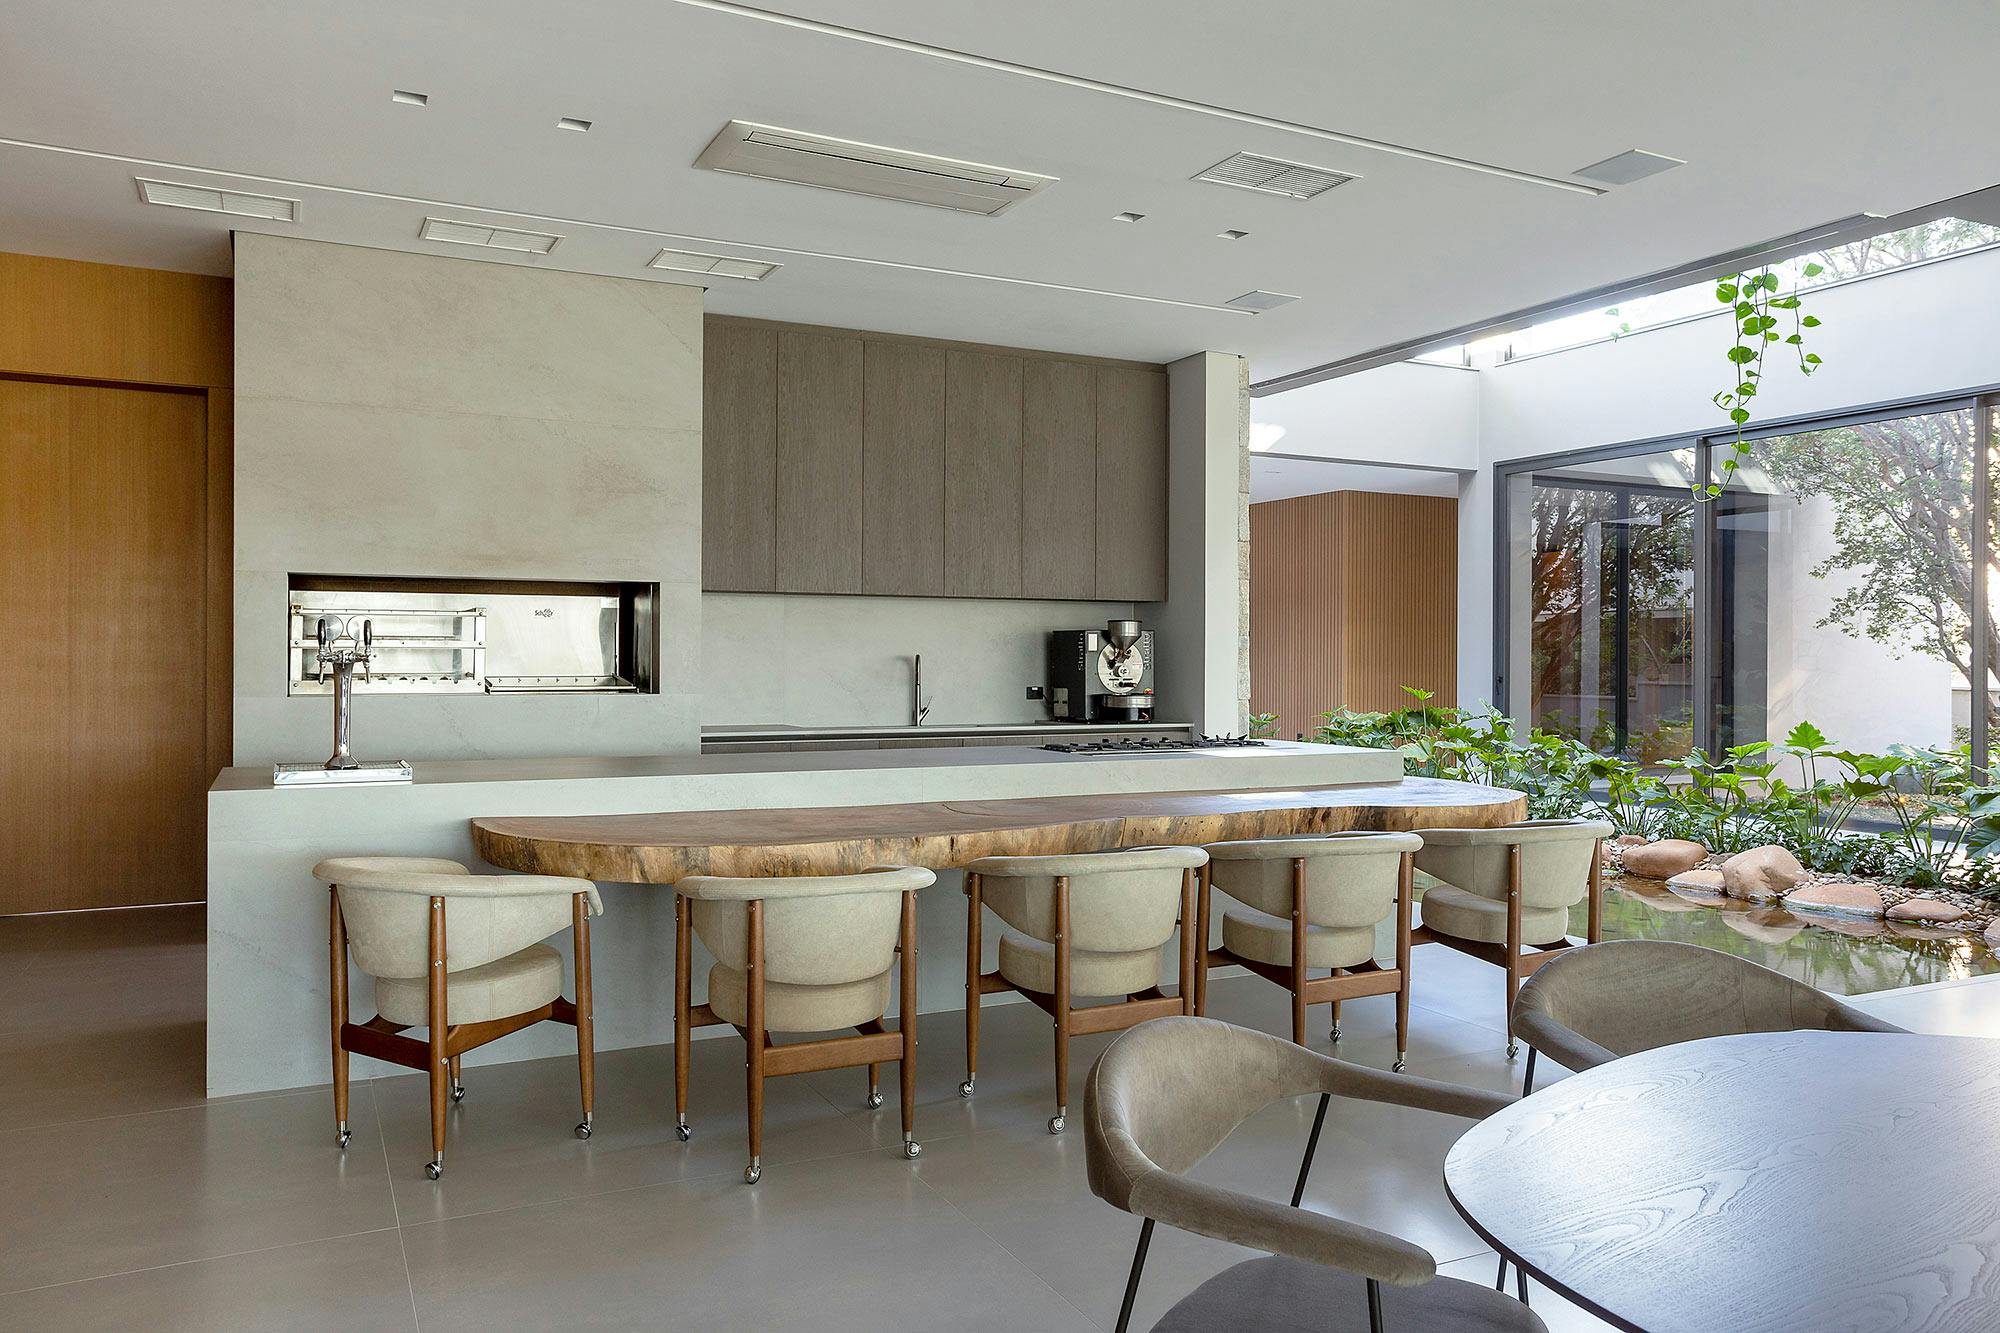 Bildnummer 37 des aktuellen Abschnitts von DKTN Sirius adds a welcoming touch to the kitchens of a residential development in Dubai von Cosentino Deutschland